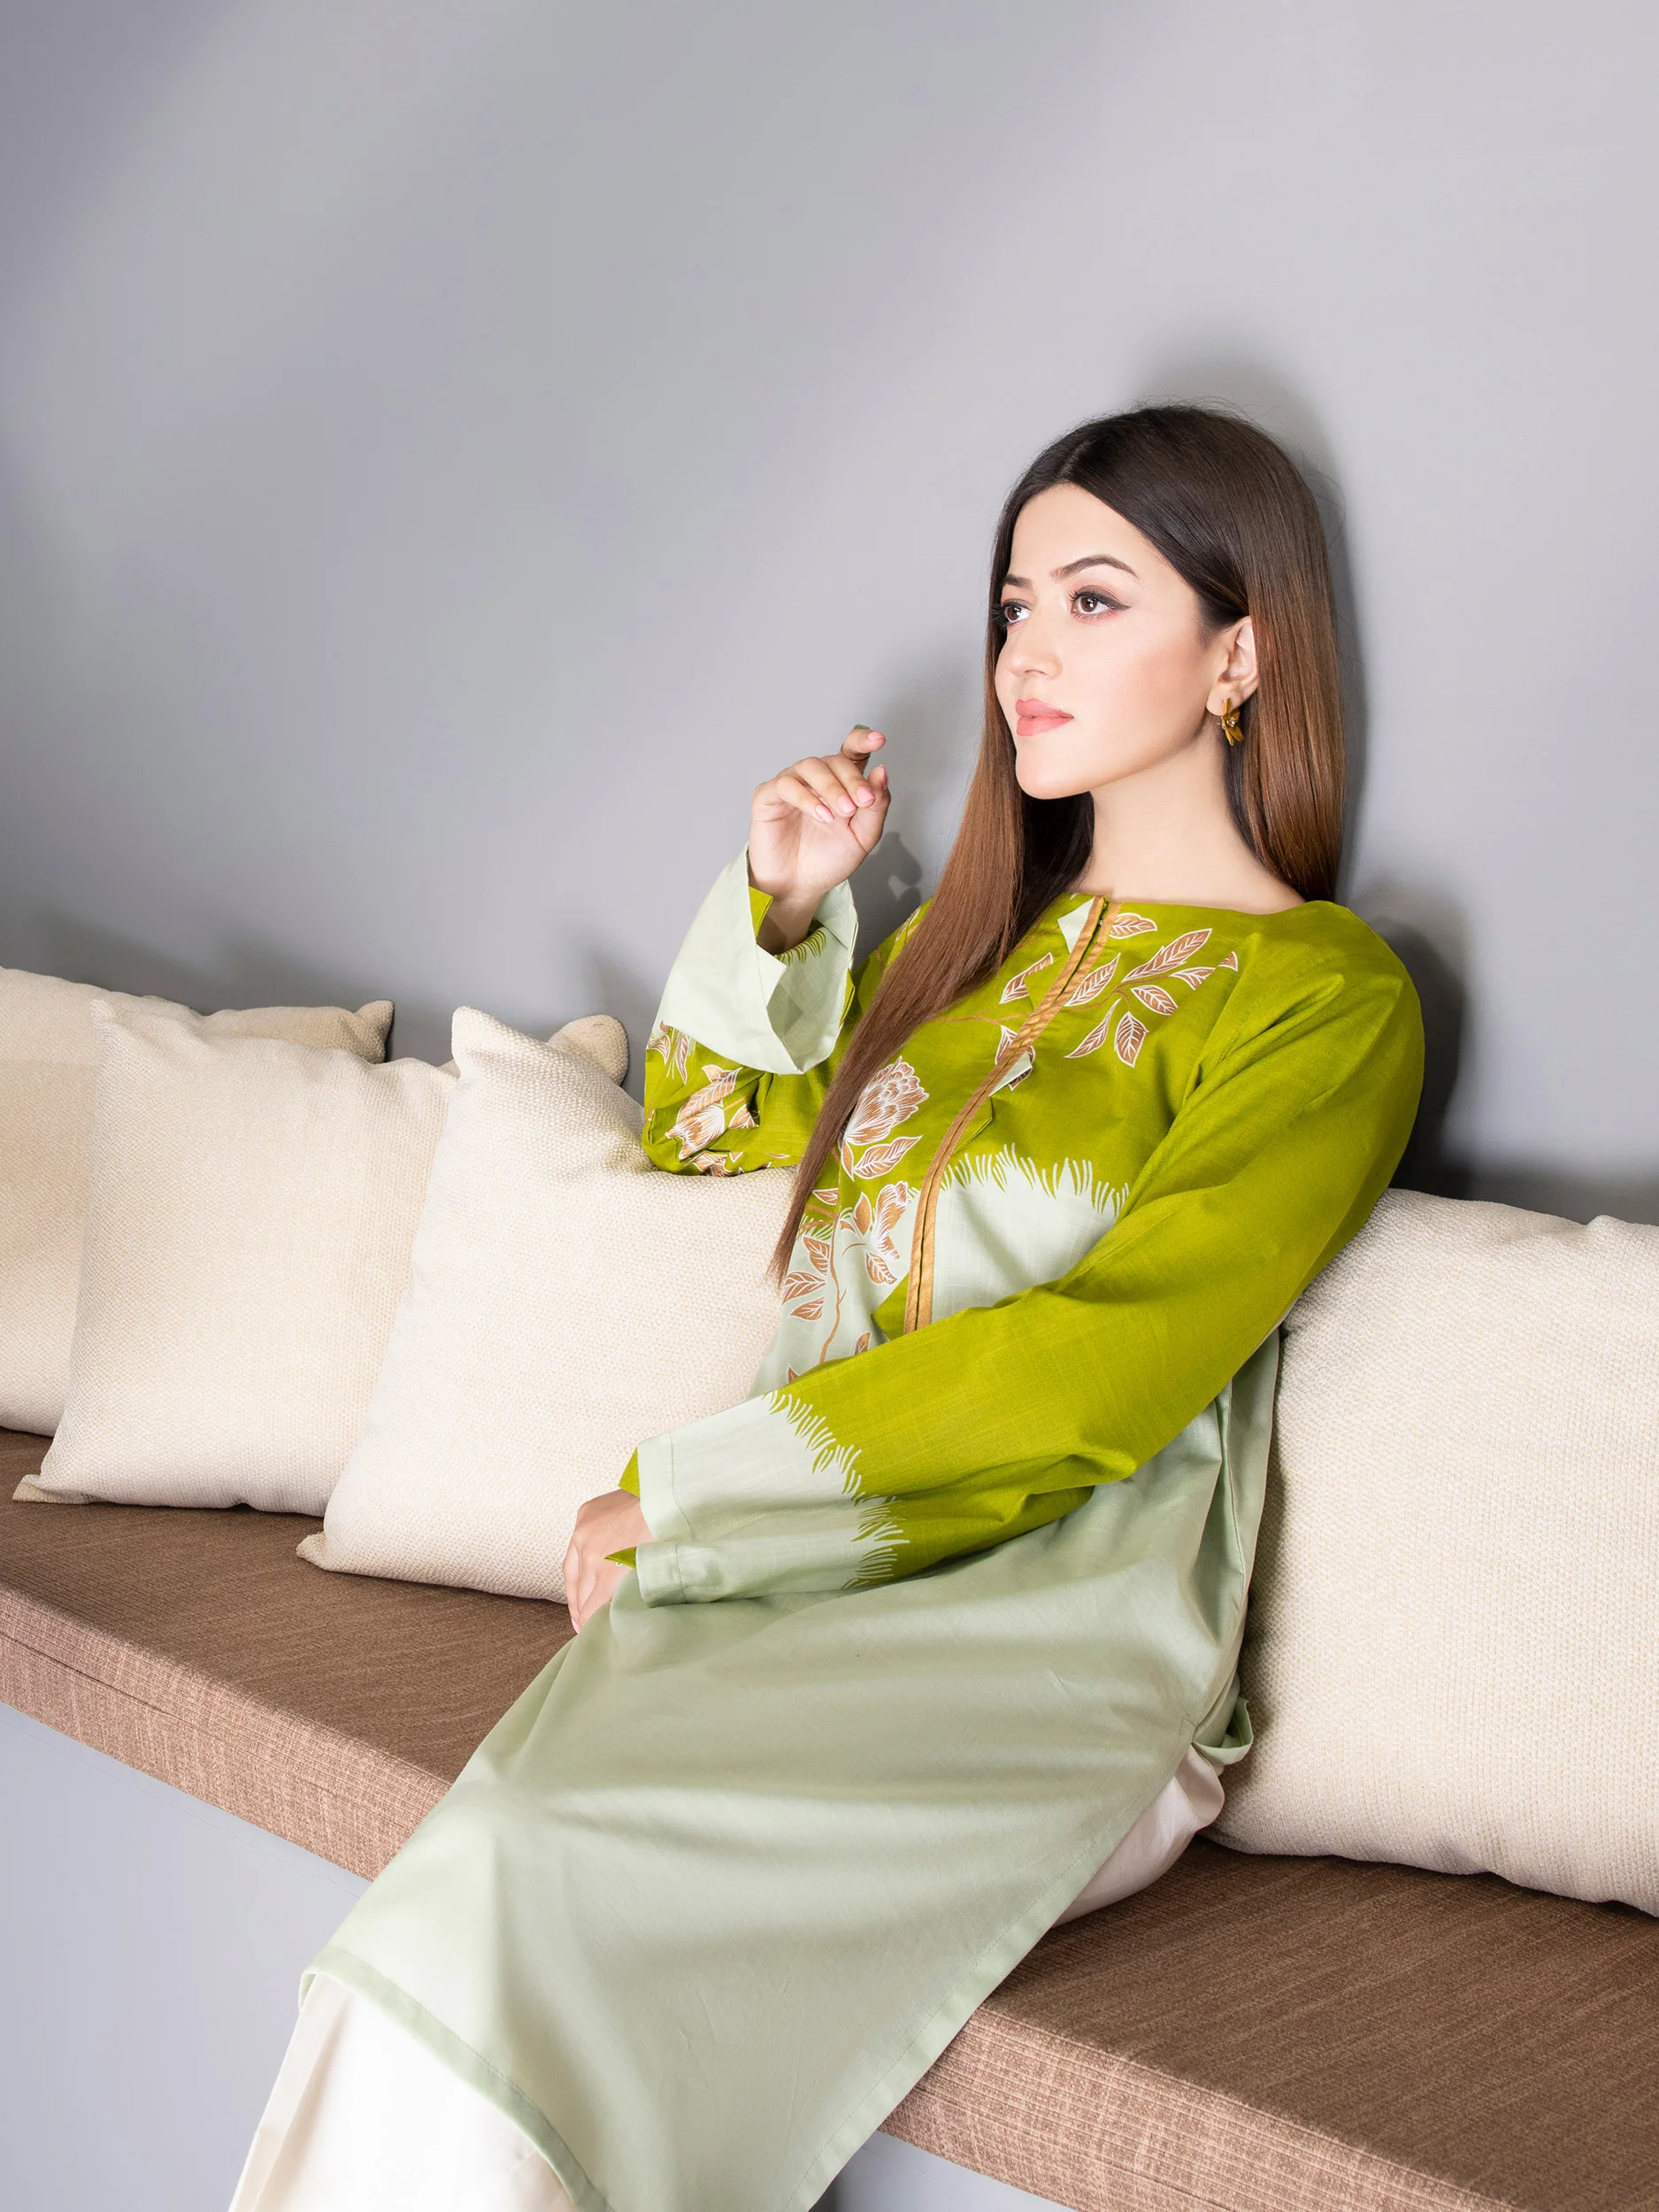 LimeLight – Sophia Pakistan